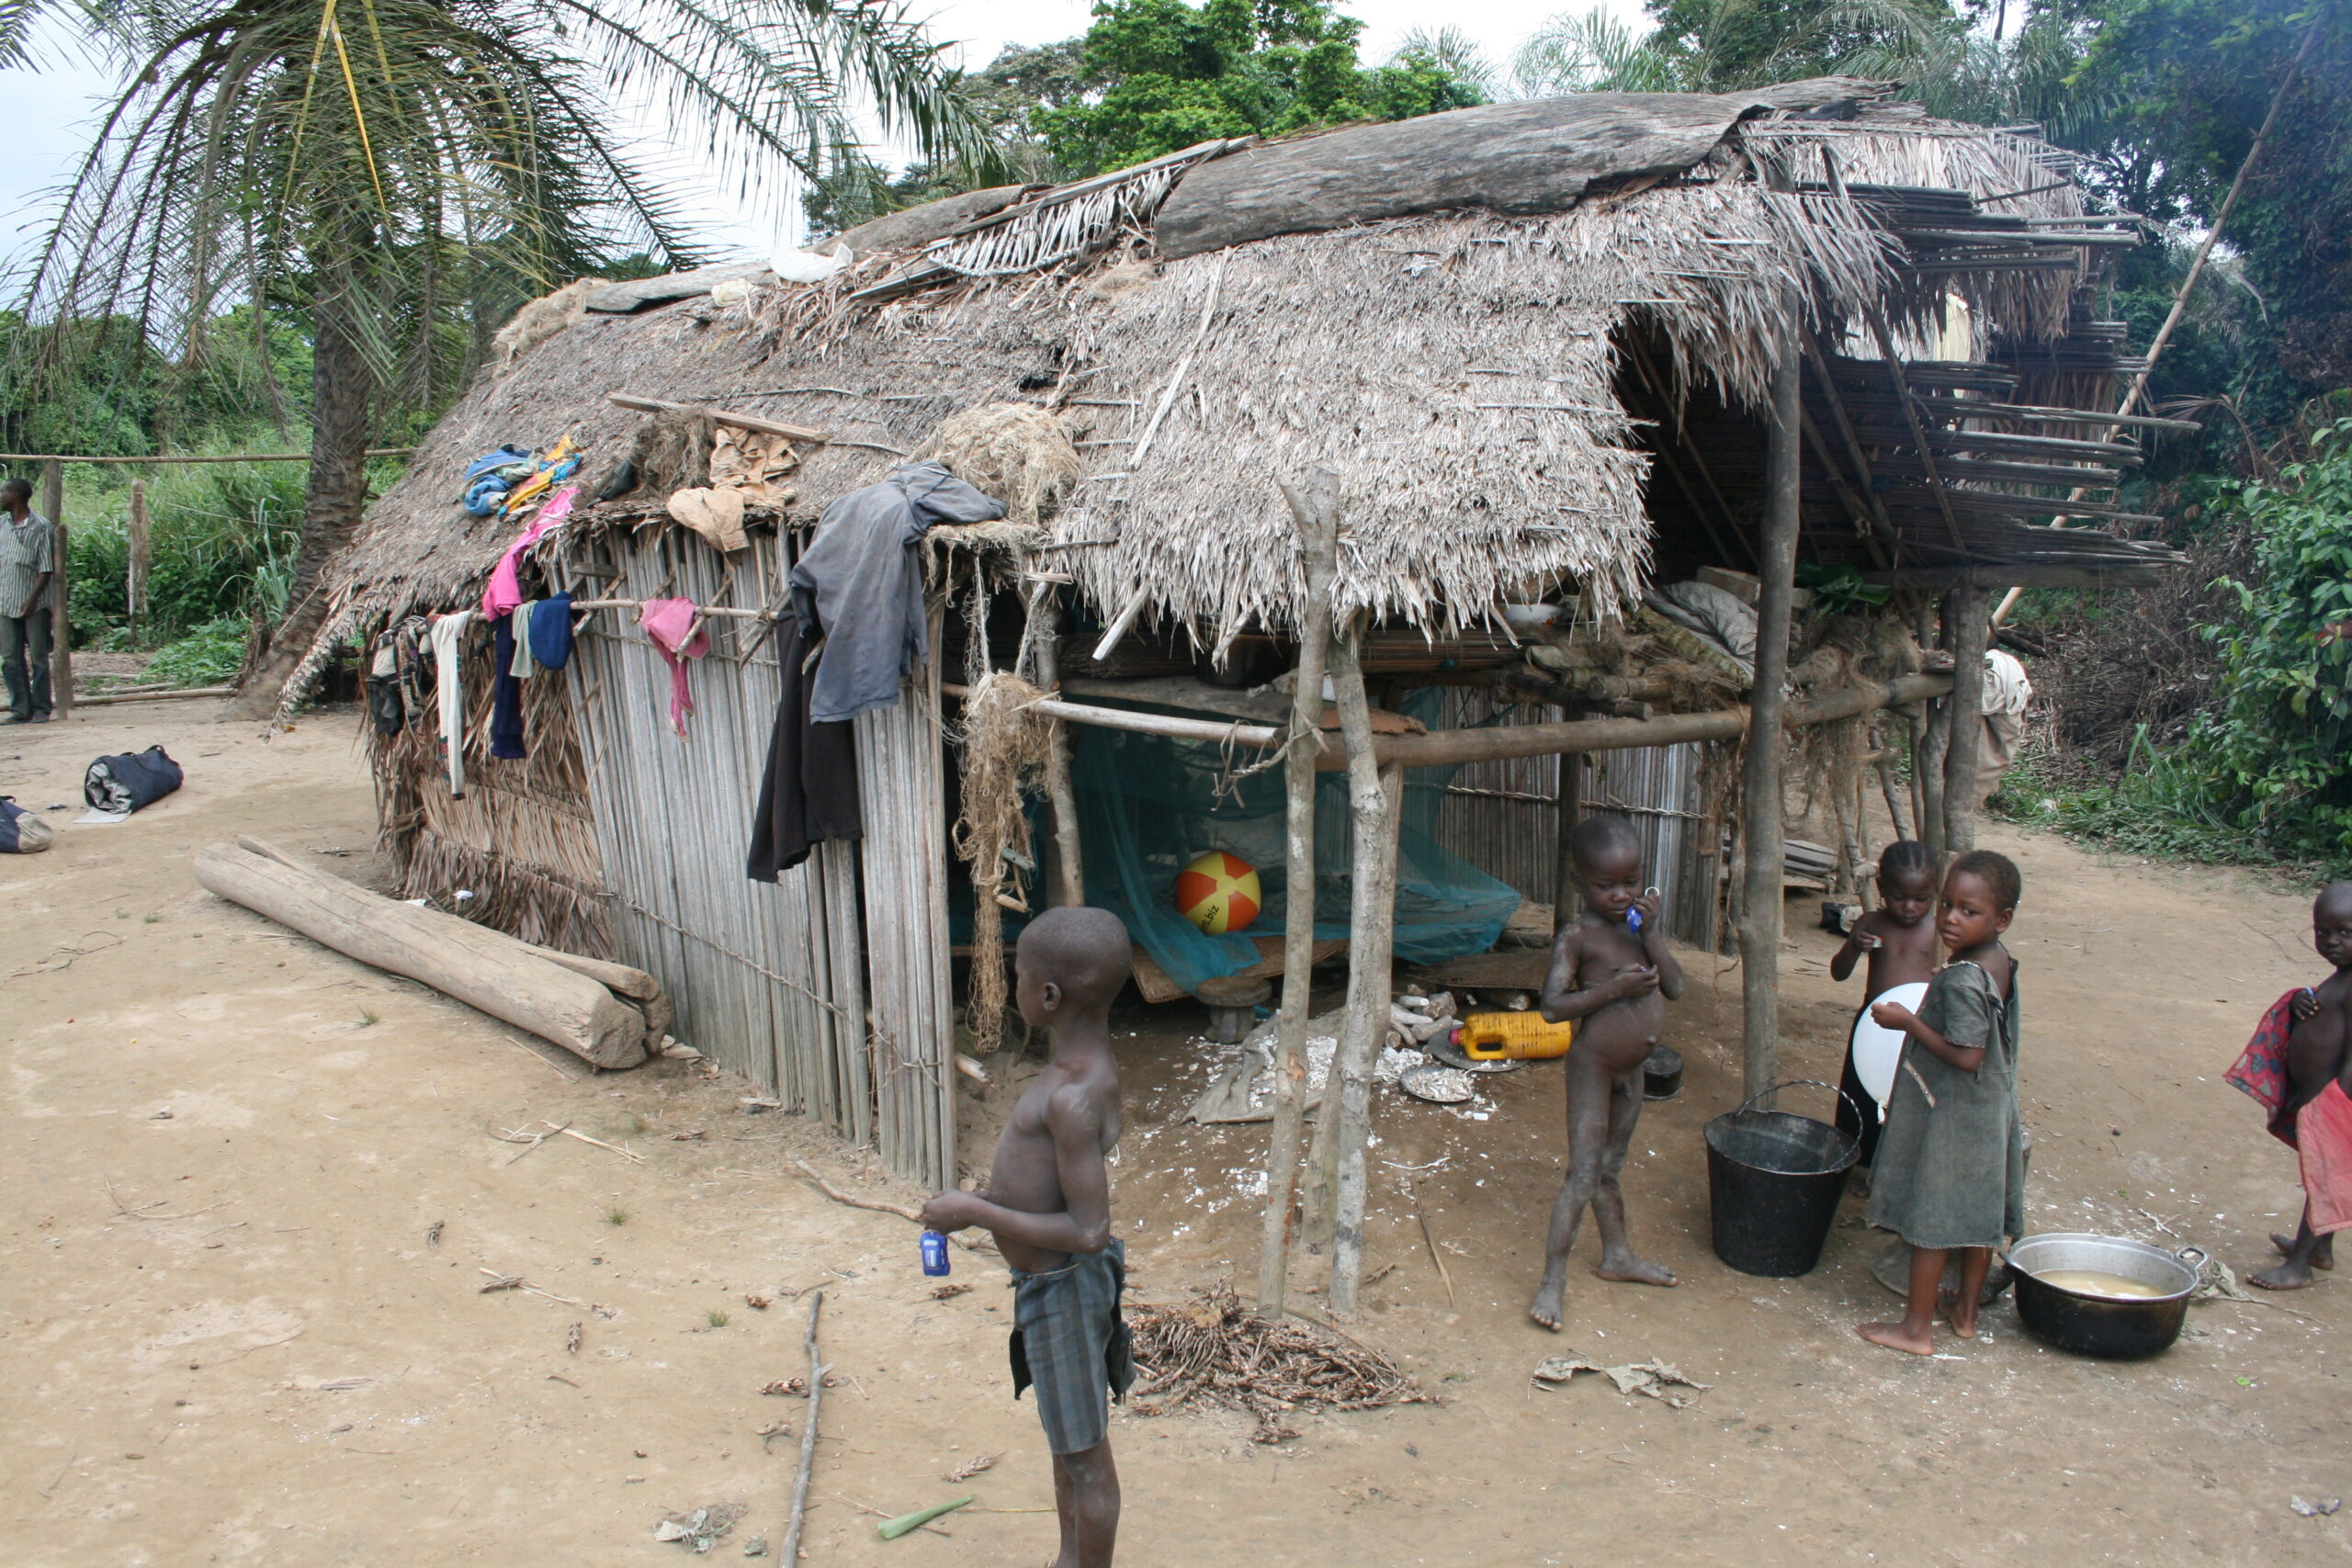 Bomongo village children with hut